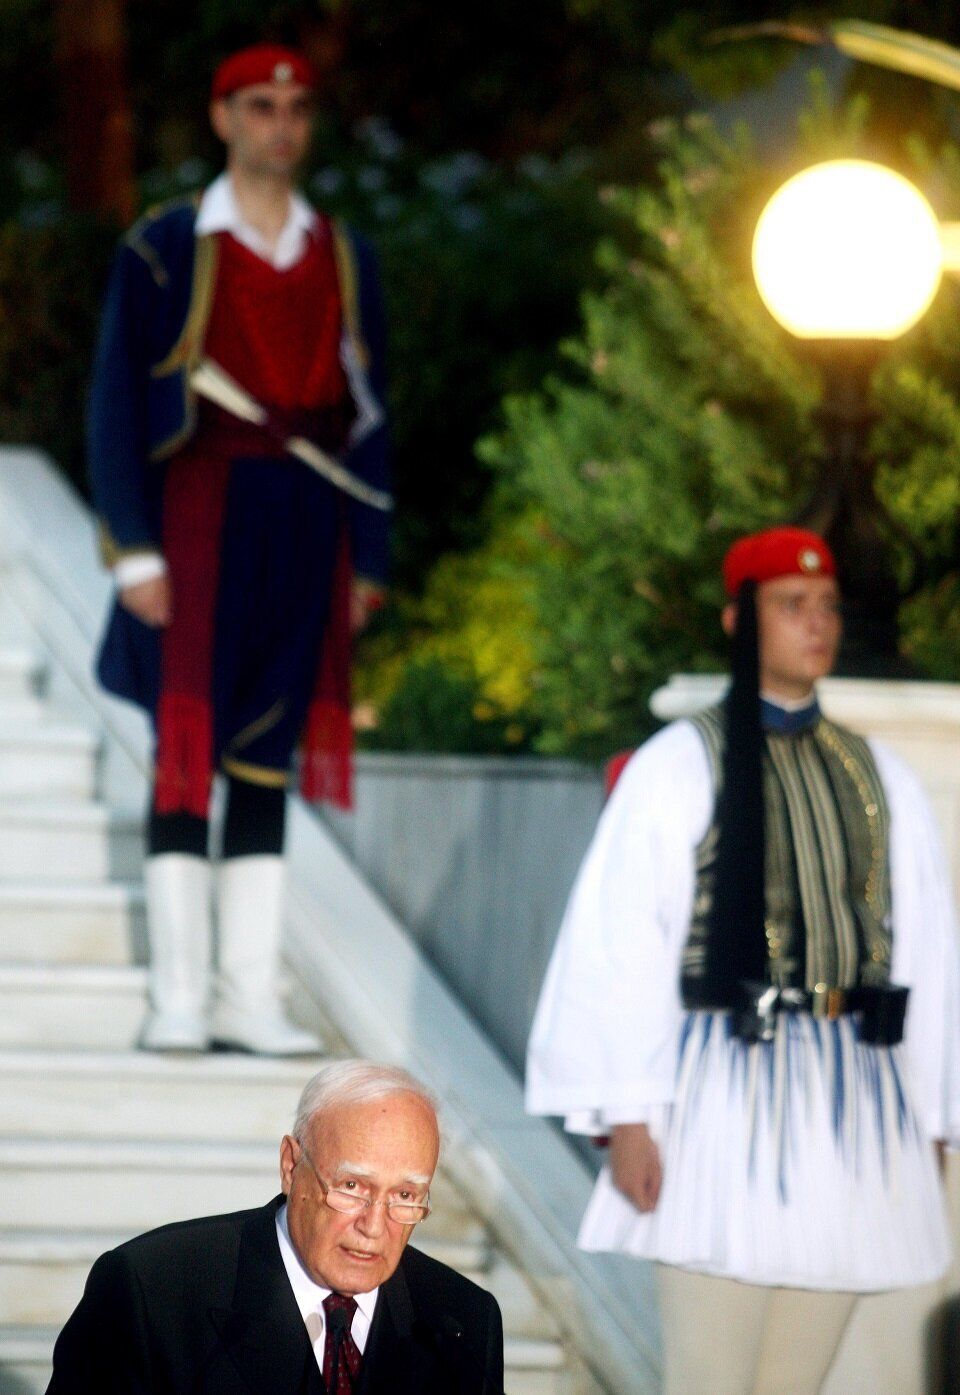 Ο Κάρολος Παπούλιας στον καθιερωμένο λόγο για την Αποκατάσταση της Δημοκρατίας, υπό το βλέμμα των ευζώνων.